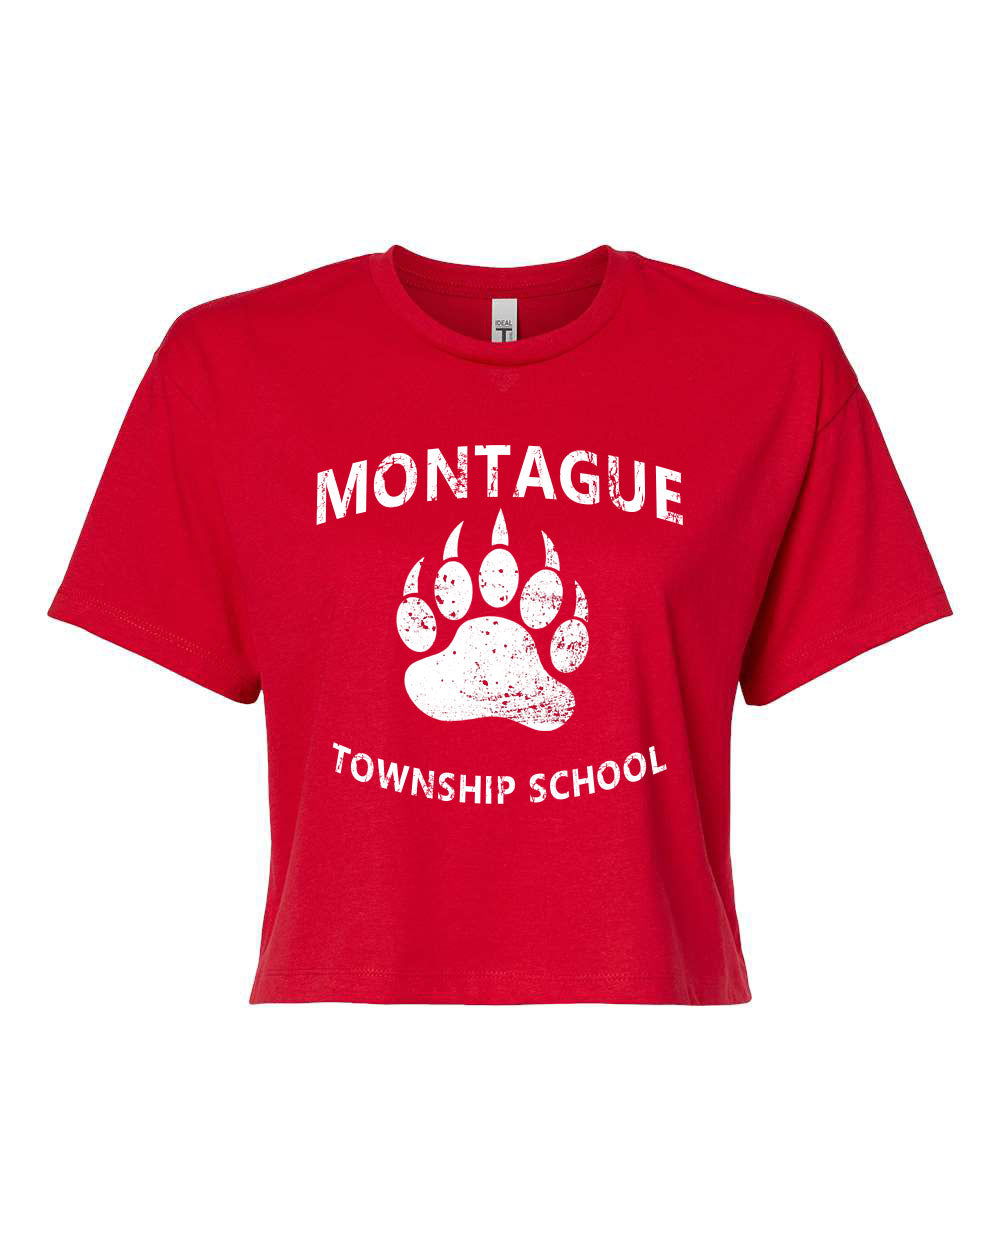 1 Montague Township School